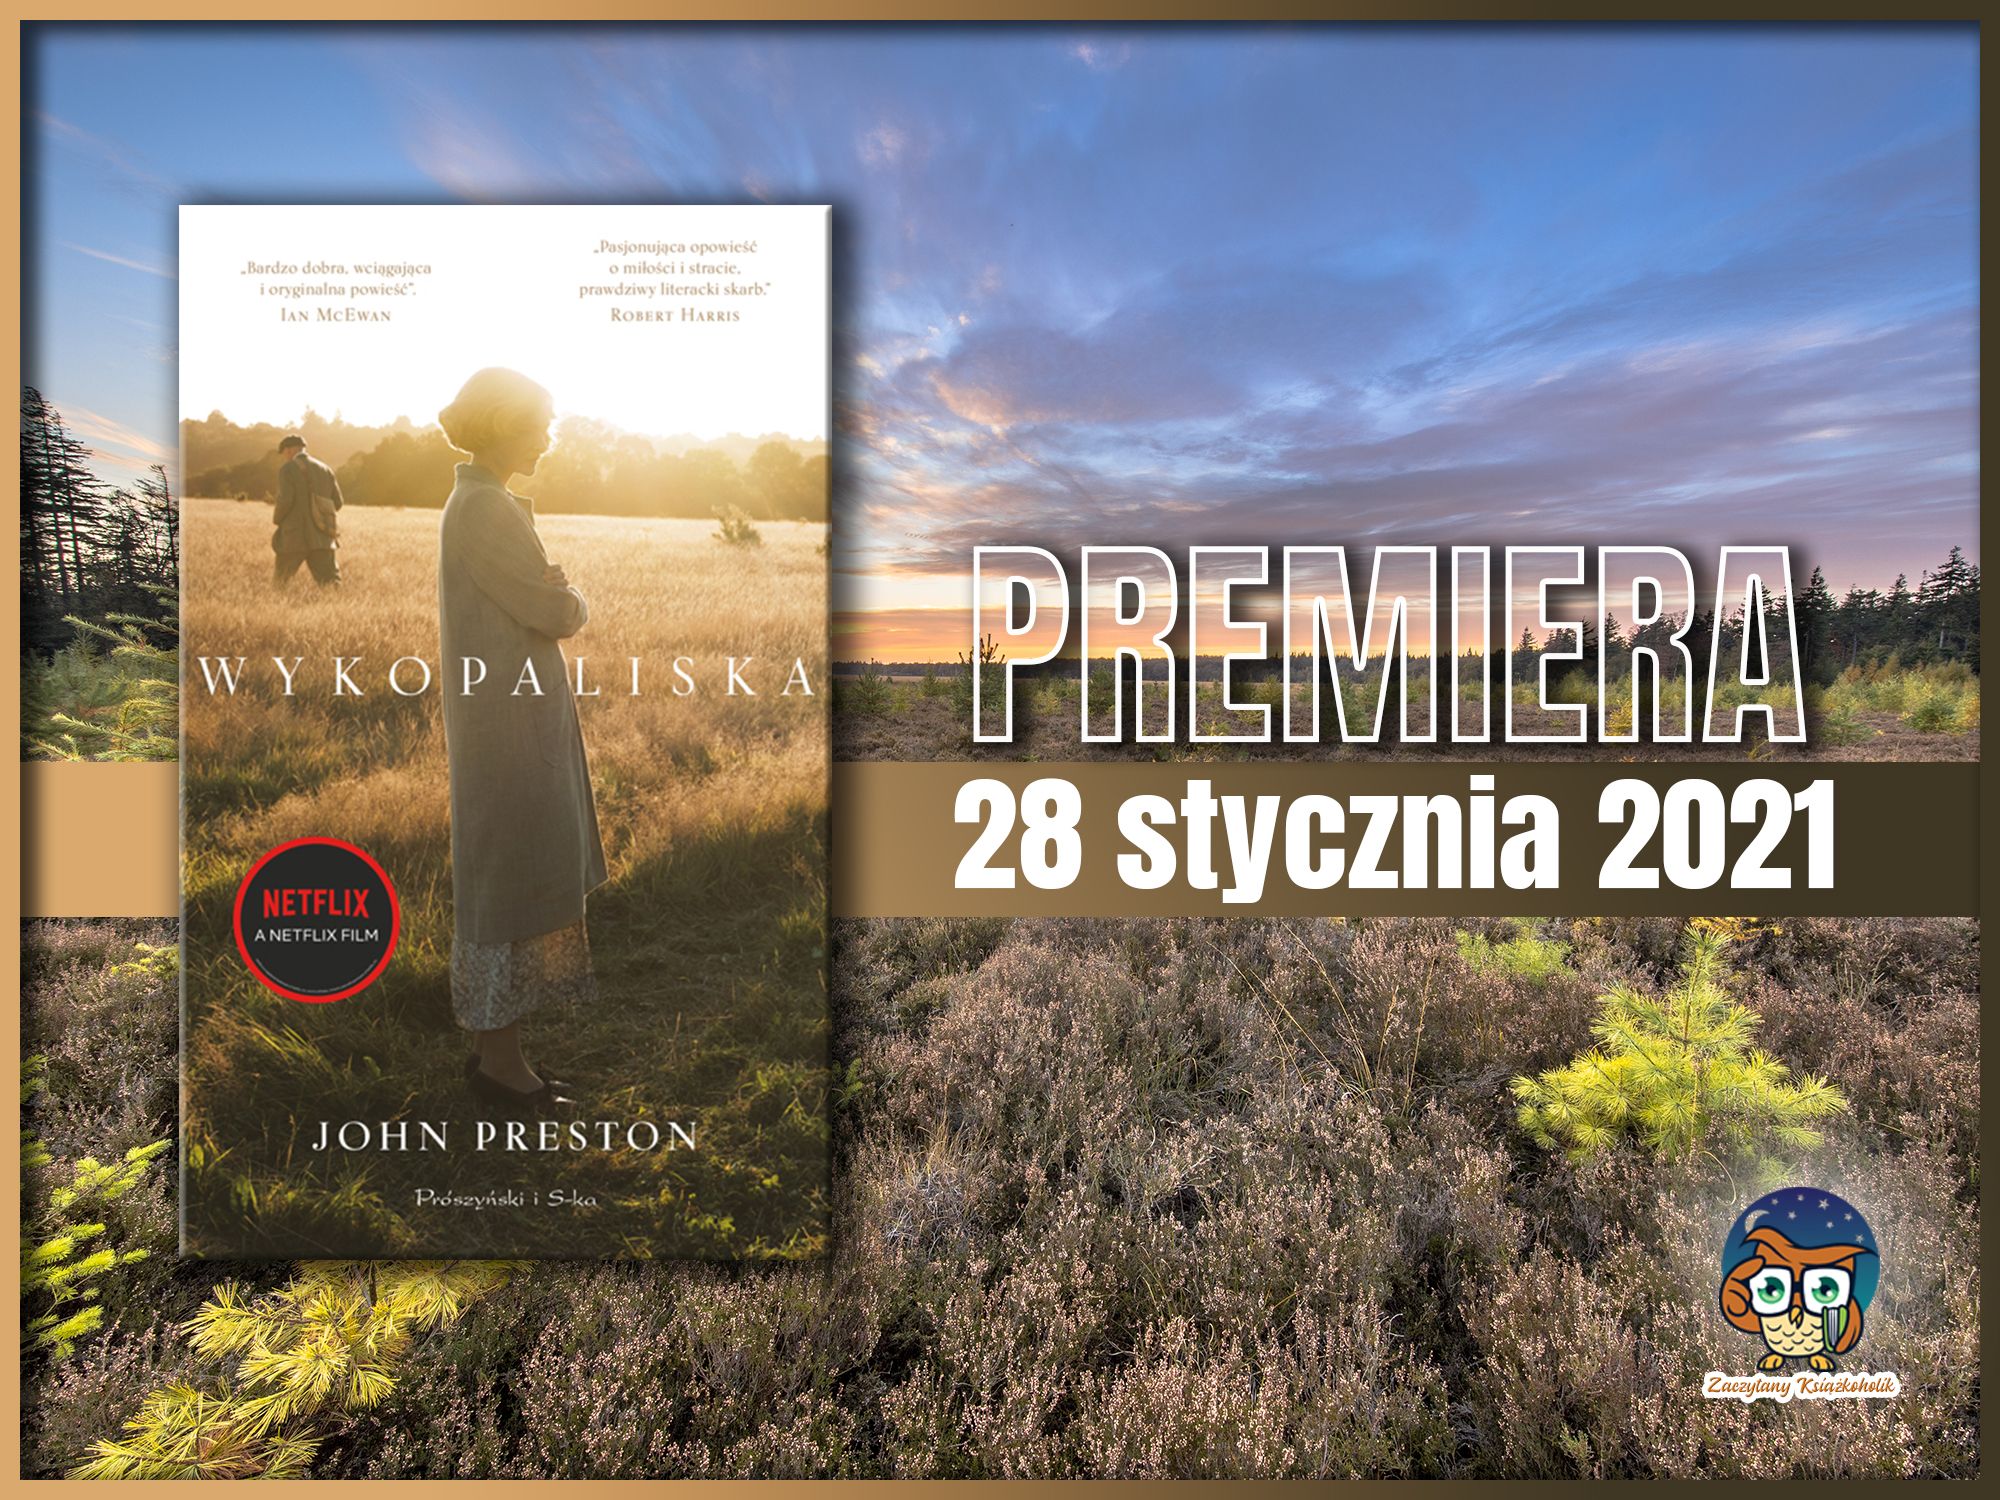 John Preston, "Wykopaliska", zaczytanyksiazkoholik.pl